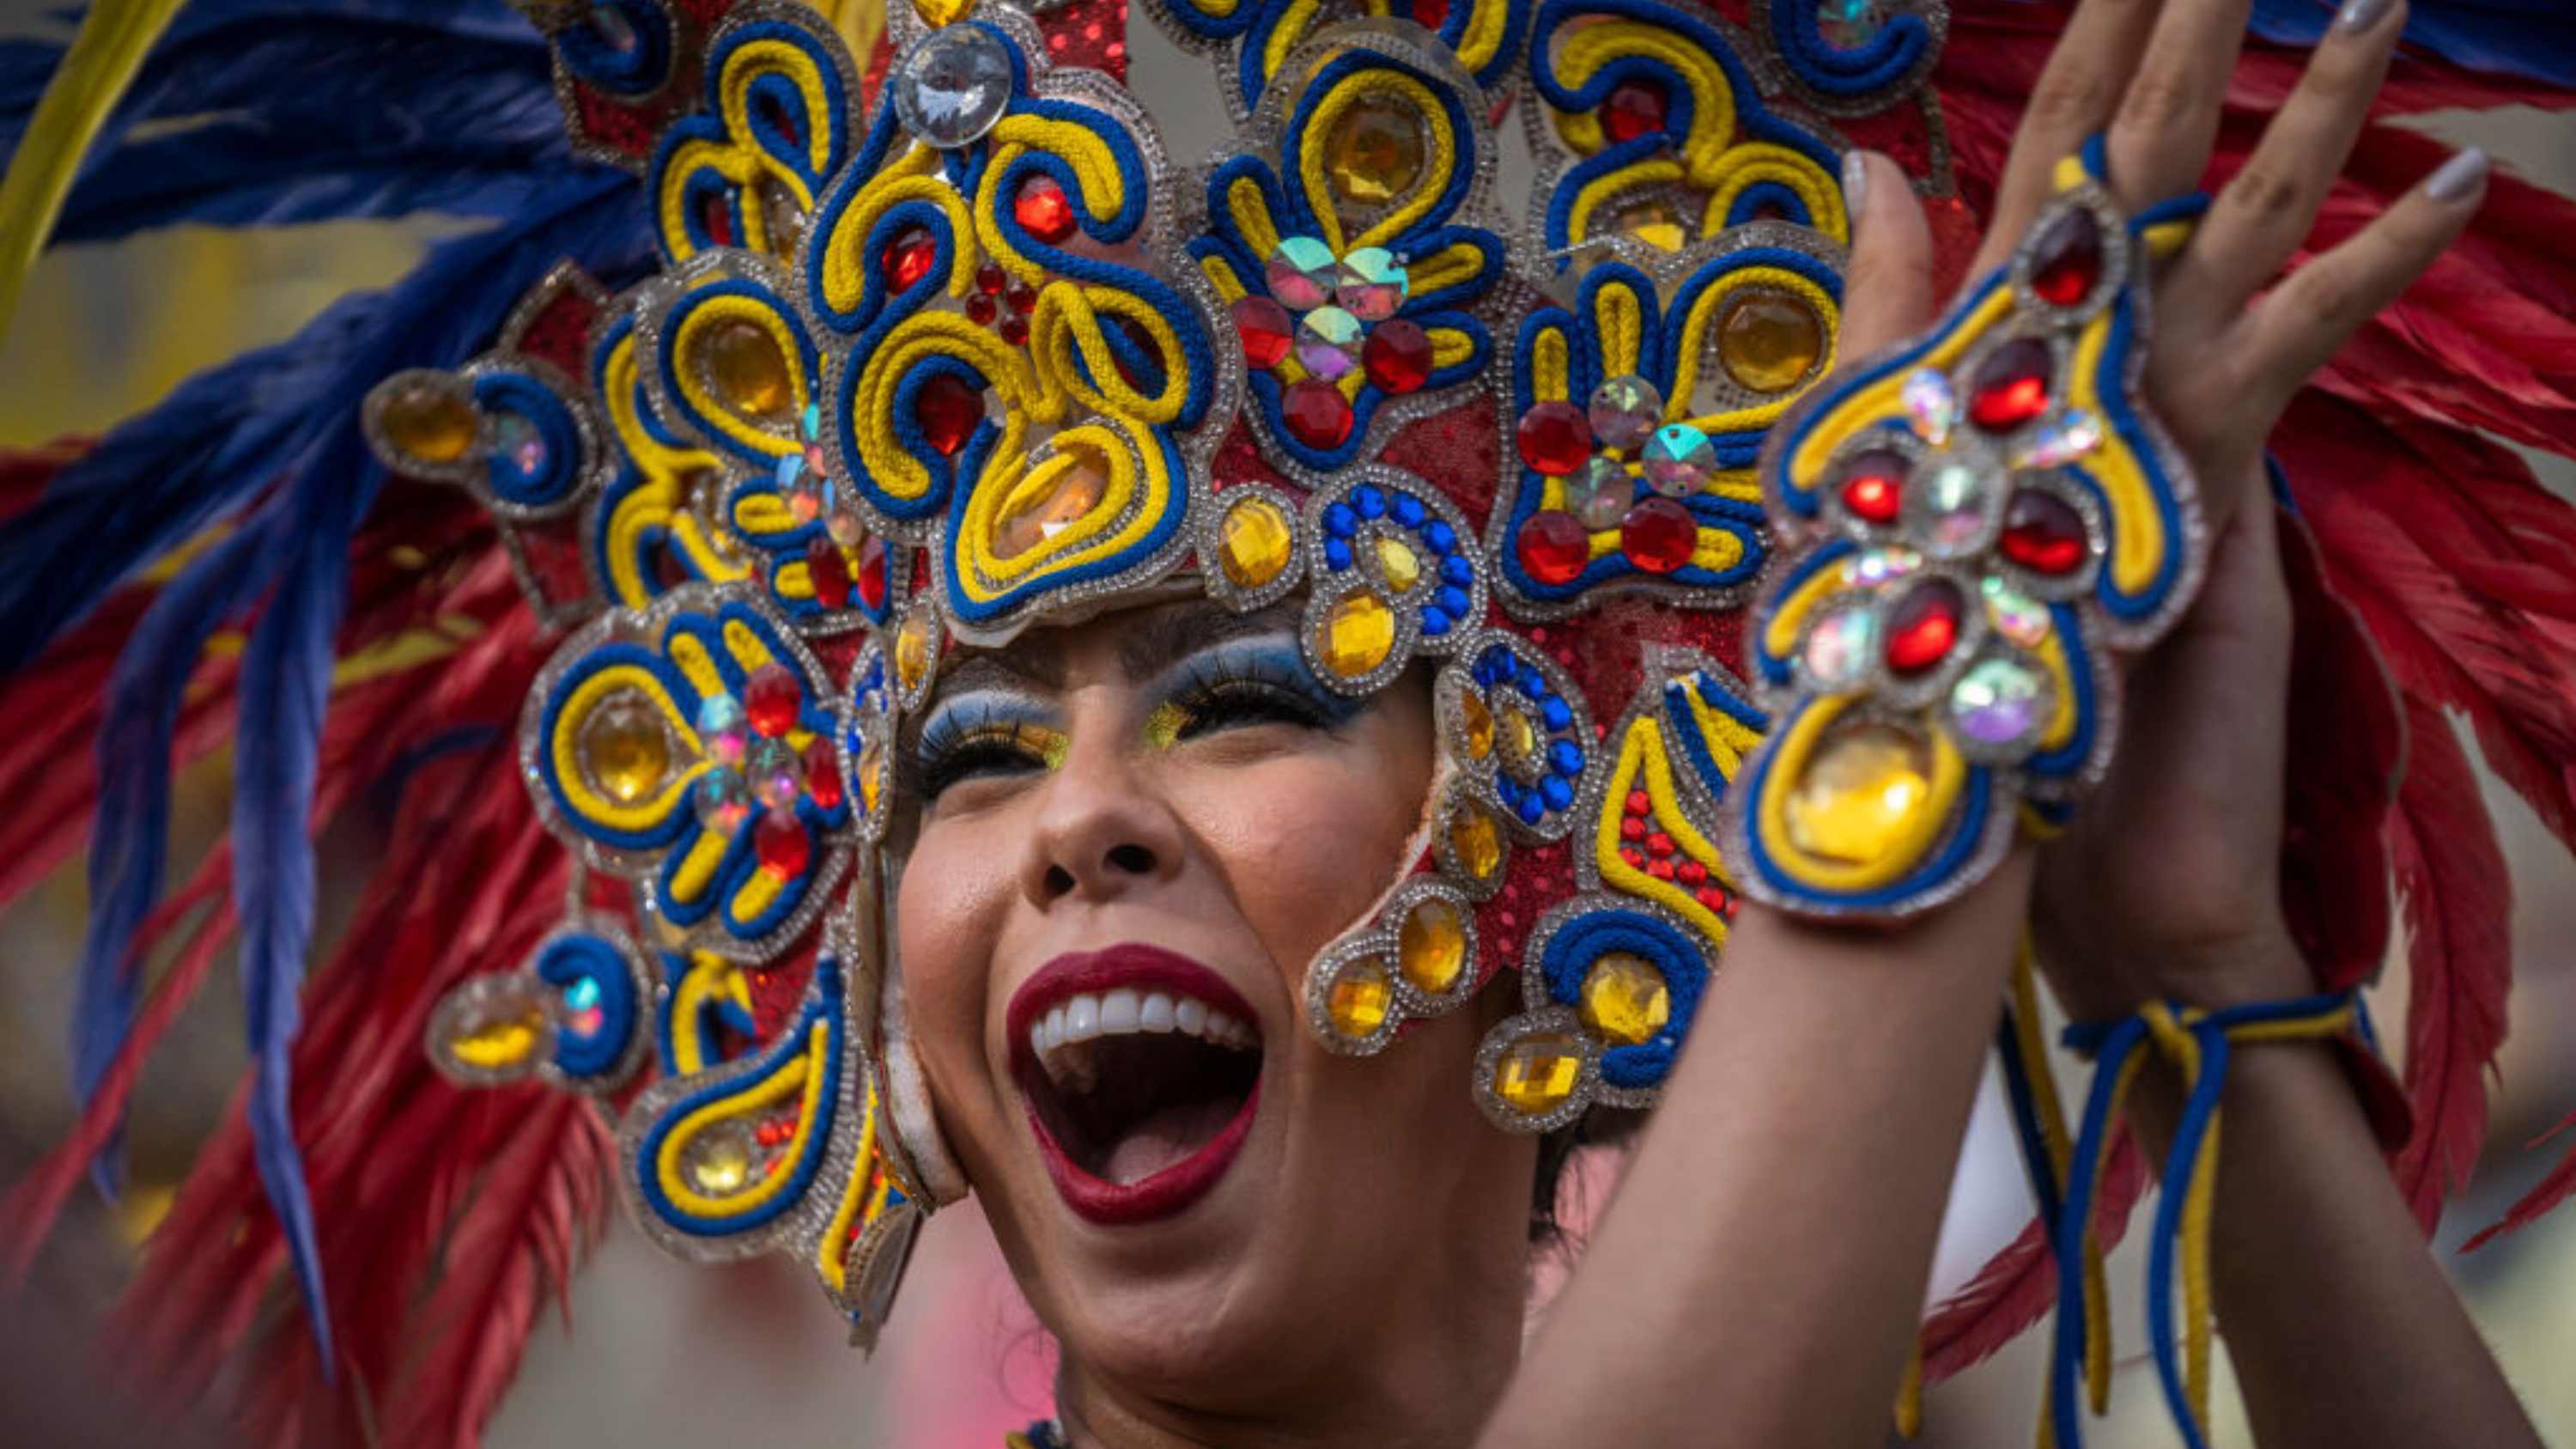 del egipto antiguo a las calles de río de janeiro: la historia de por qué celebramos carnaval